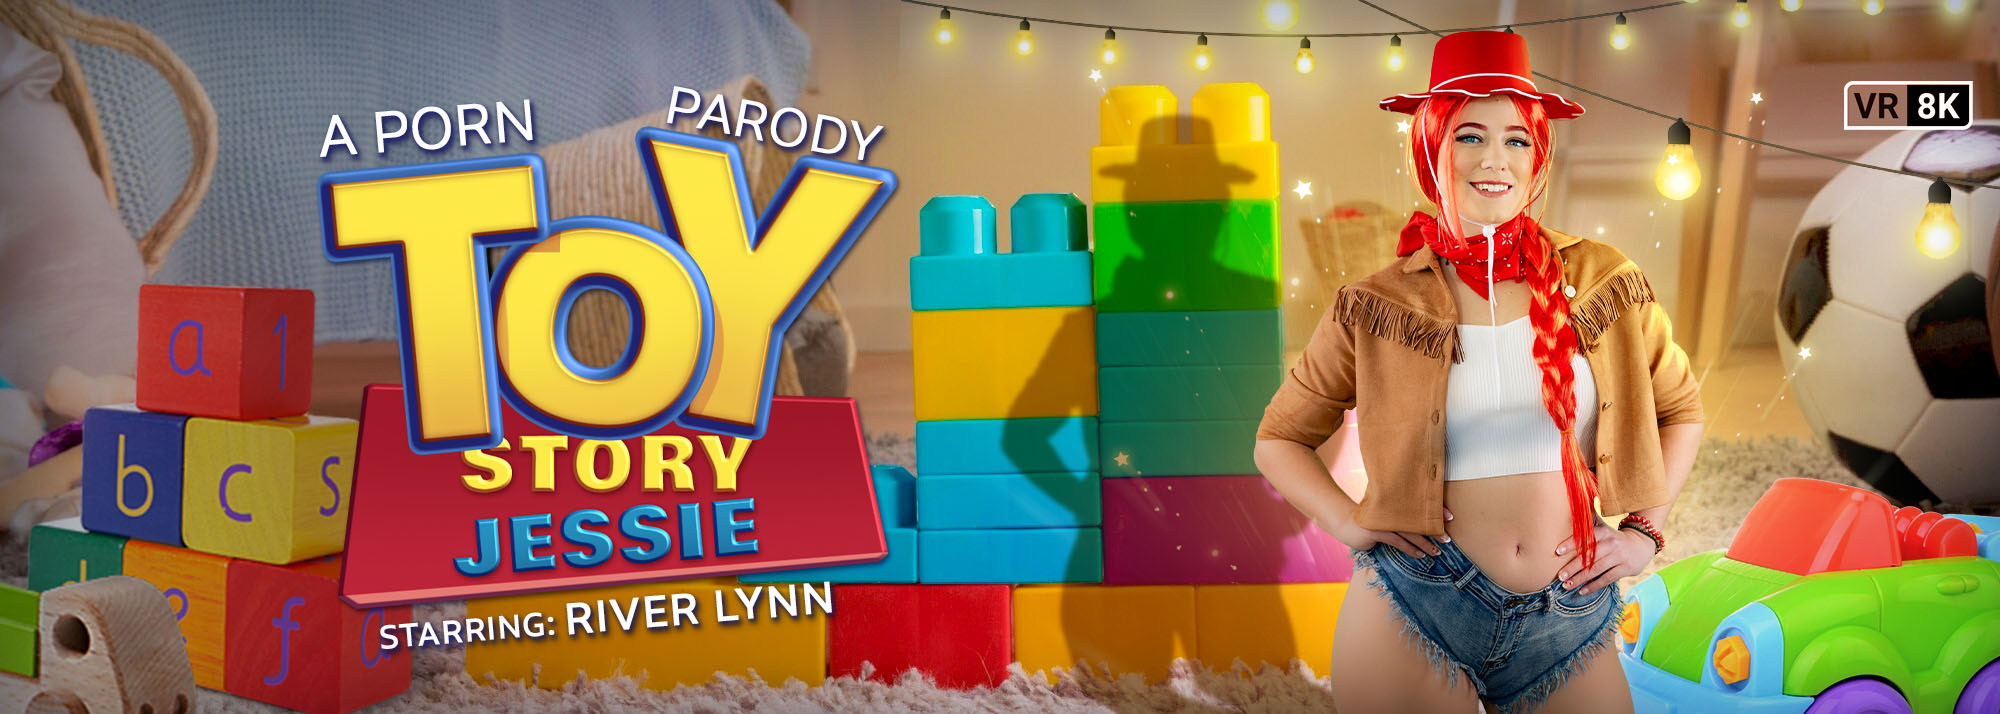 Toy Story: Jessie (A Porn Parody) - VR Video, Starring: River Lynn